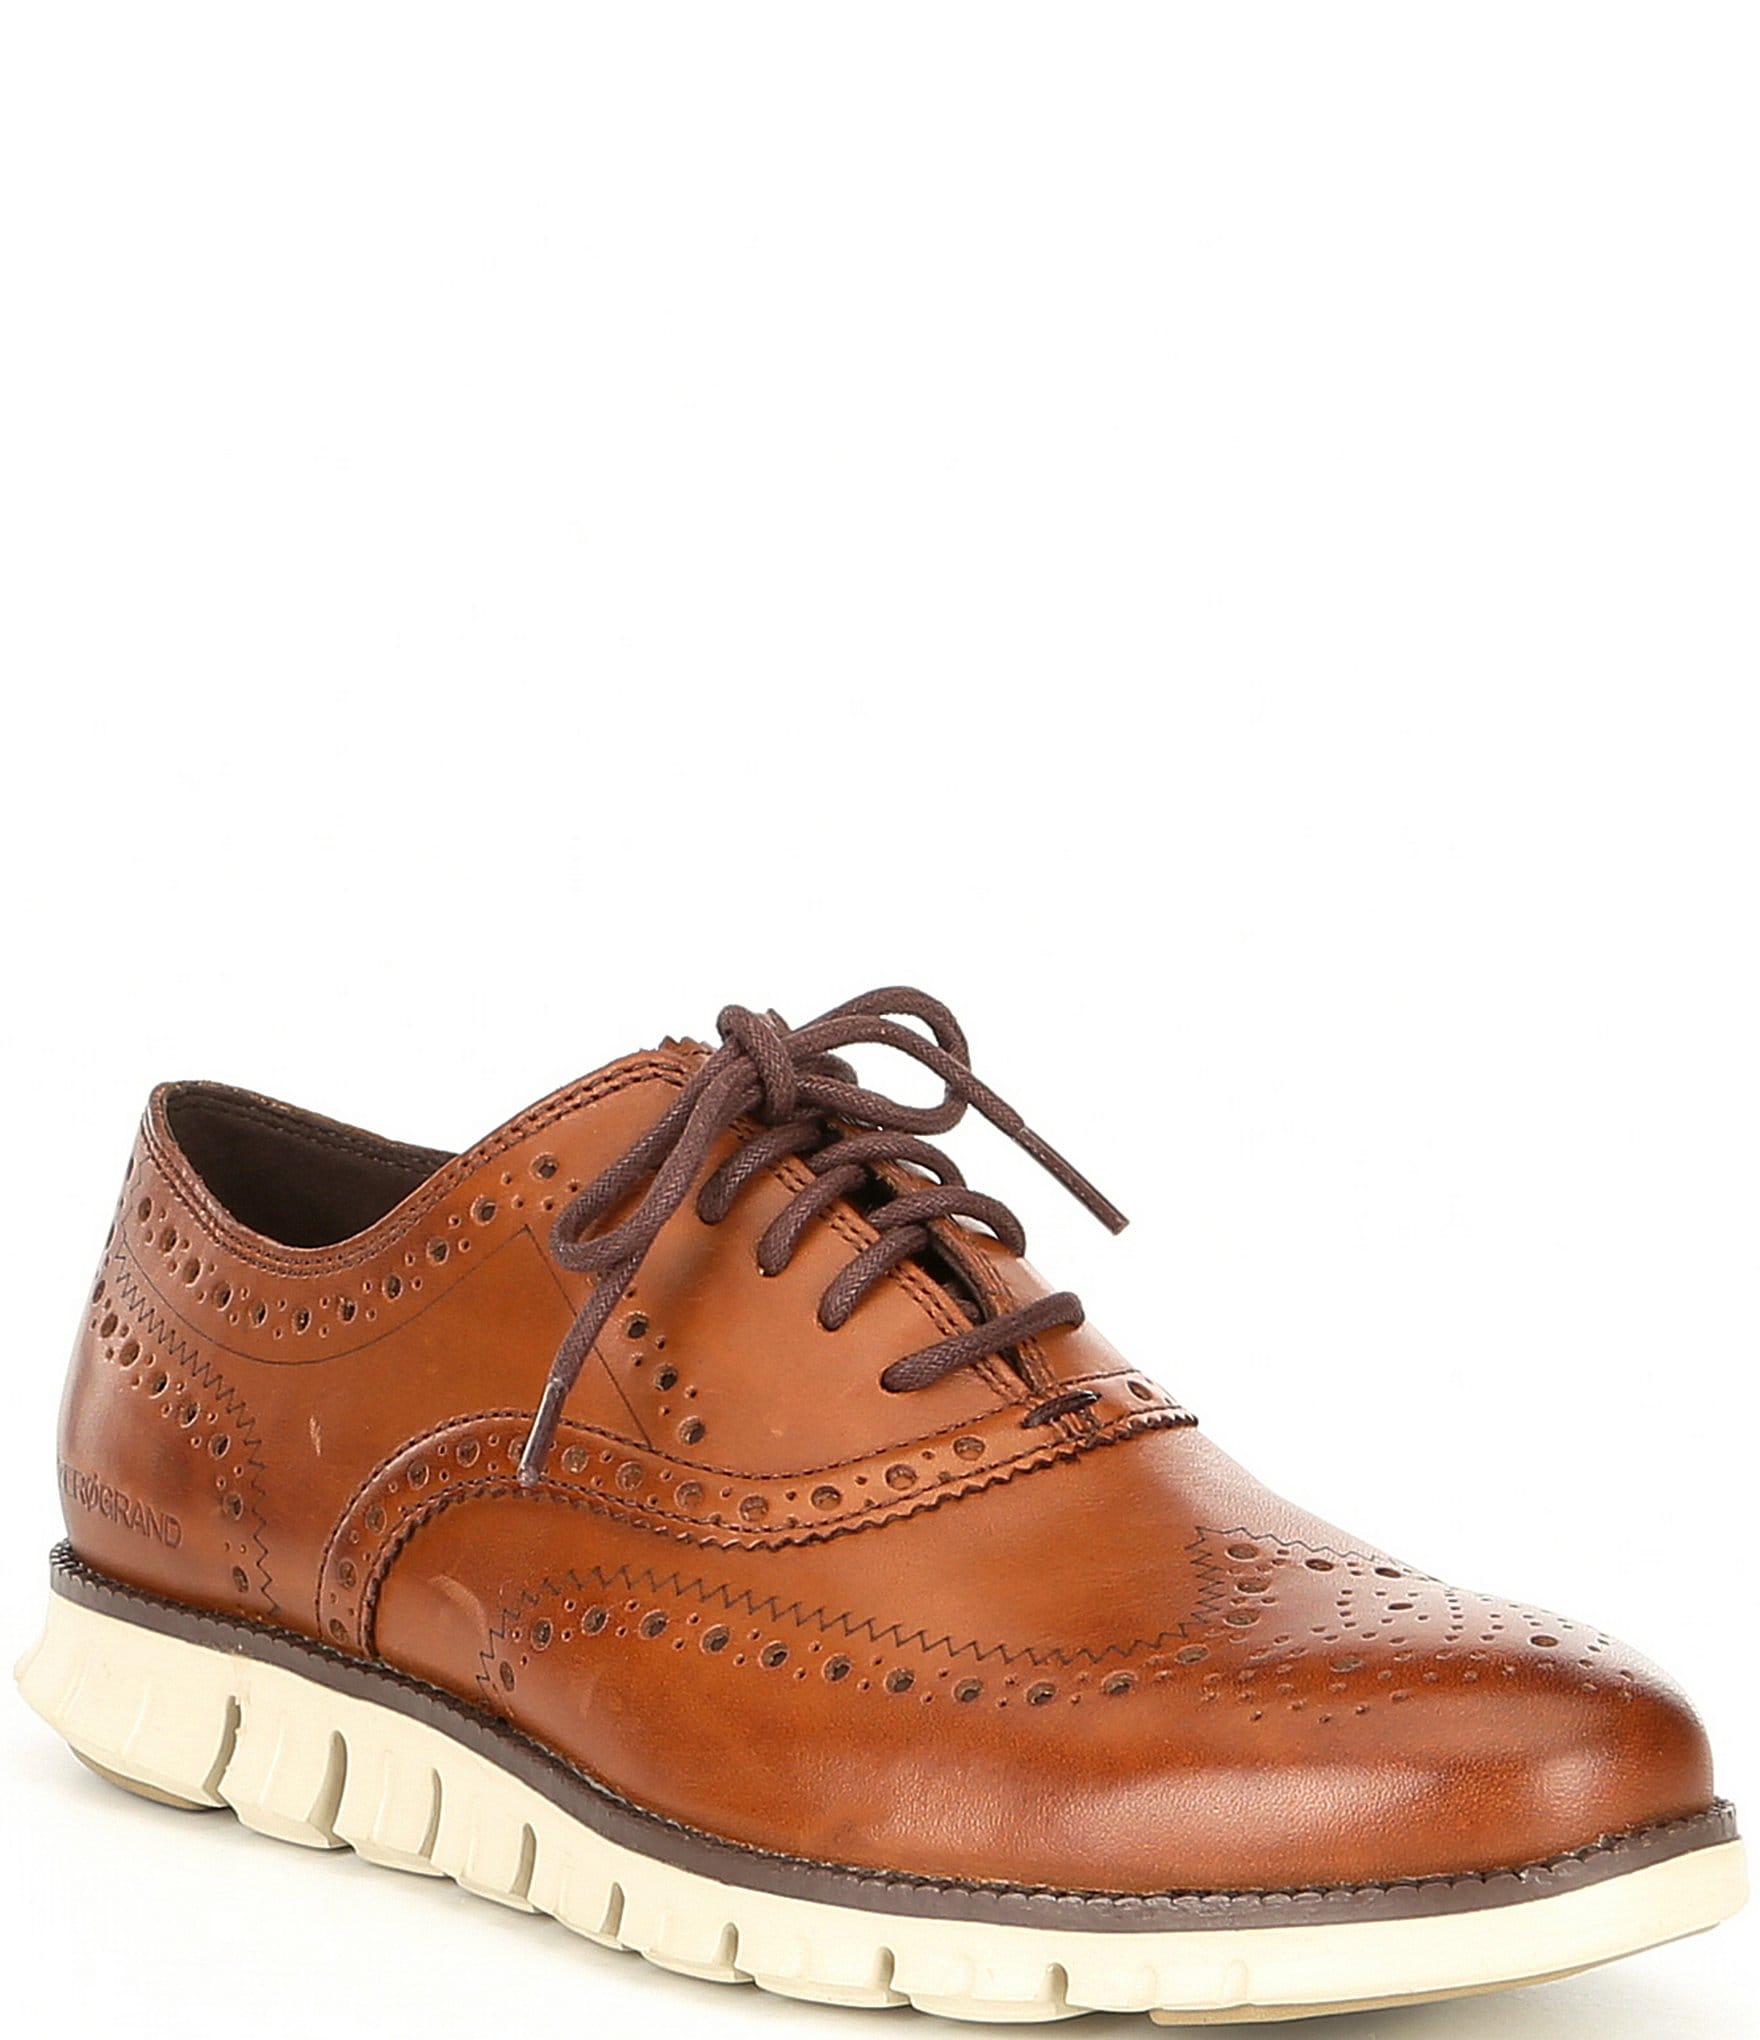 Cole Haan mens 11 brown leather plain toe classic dress shoes EUC blog ...